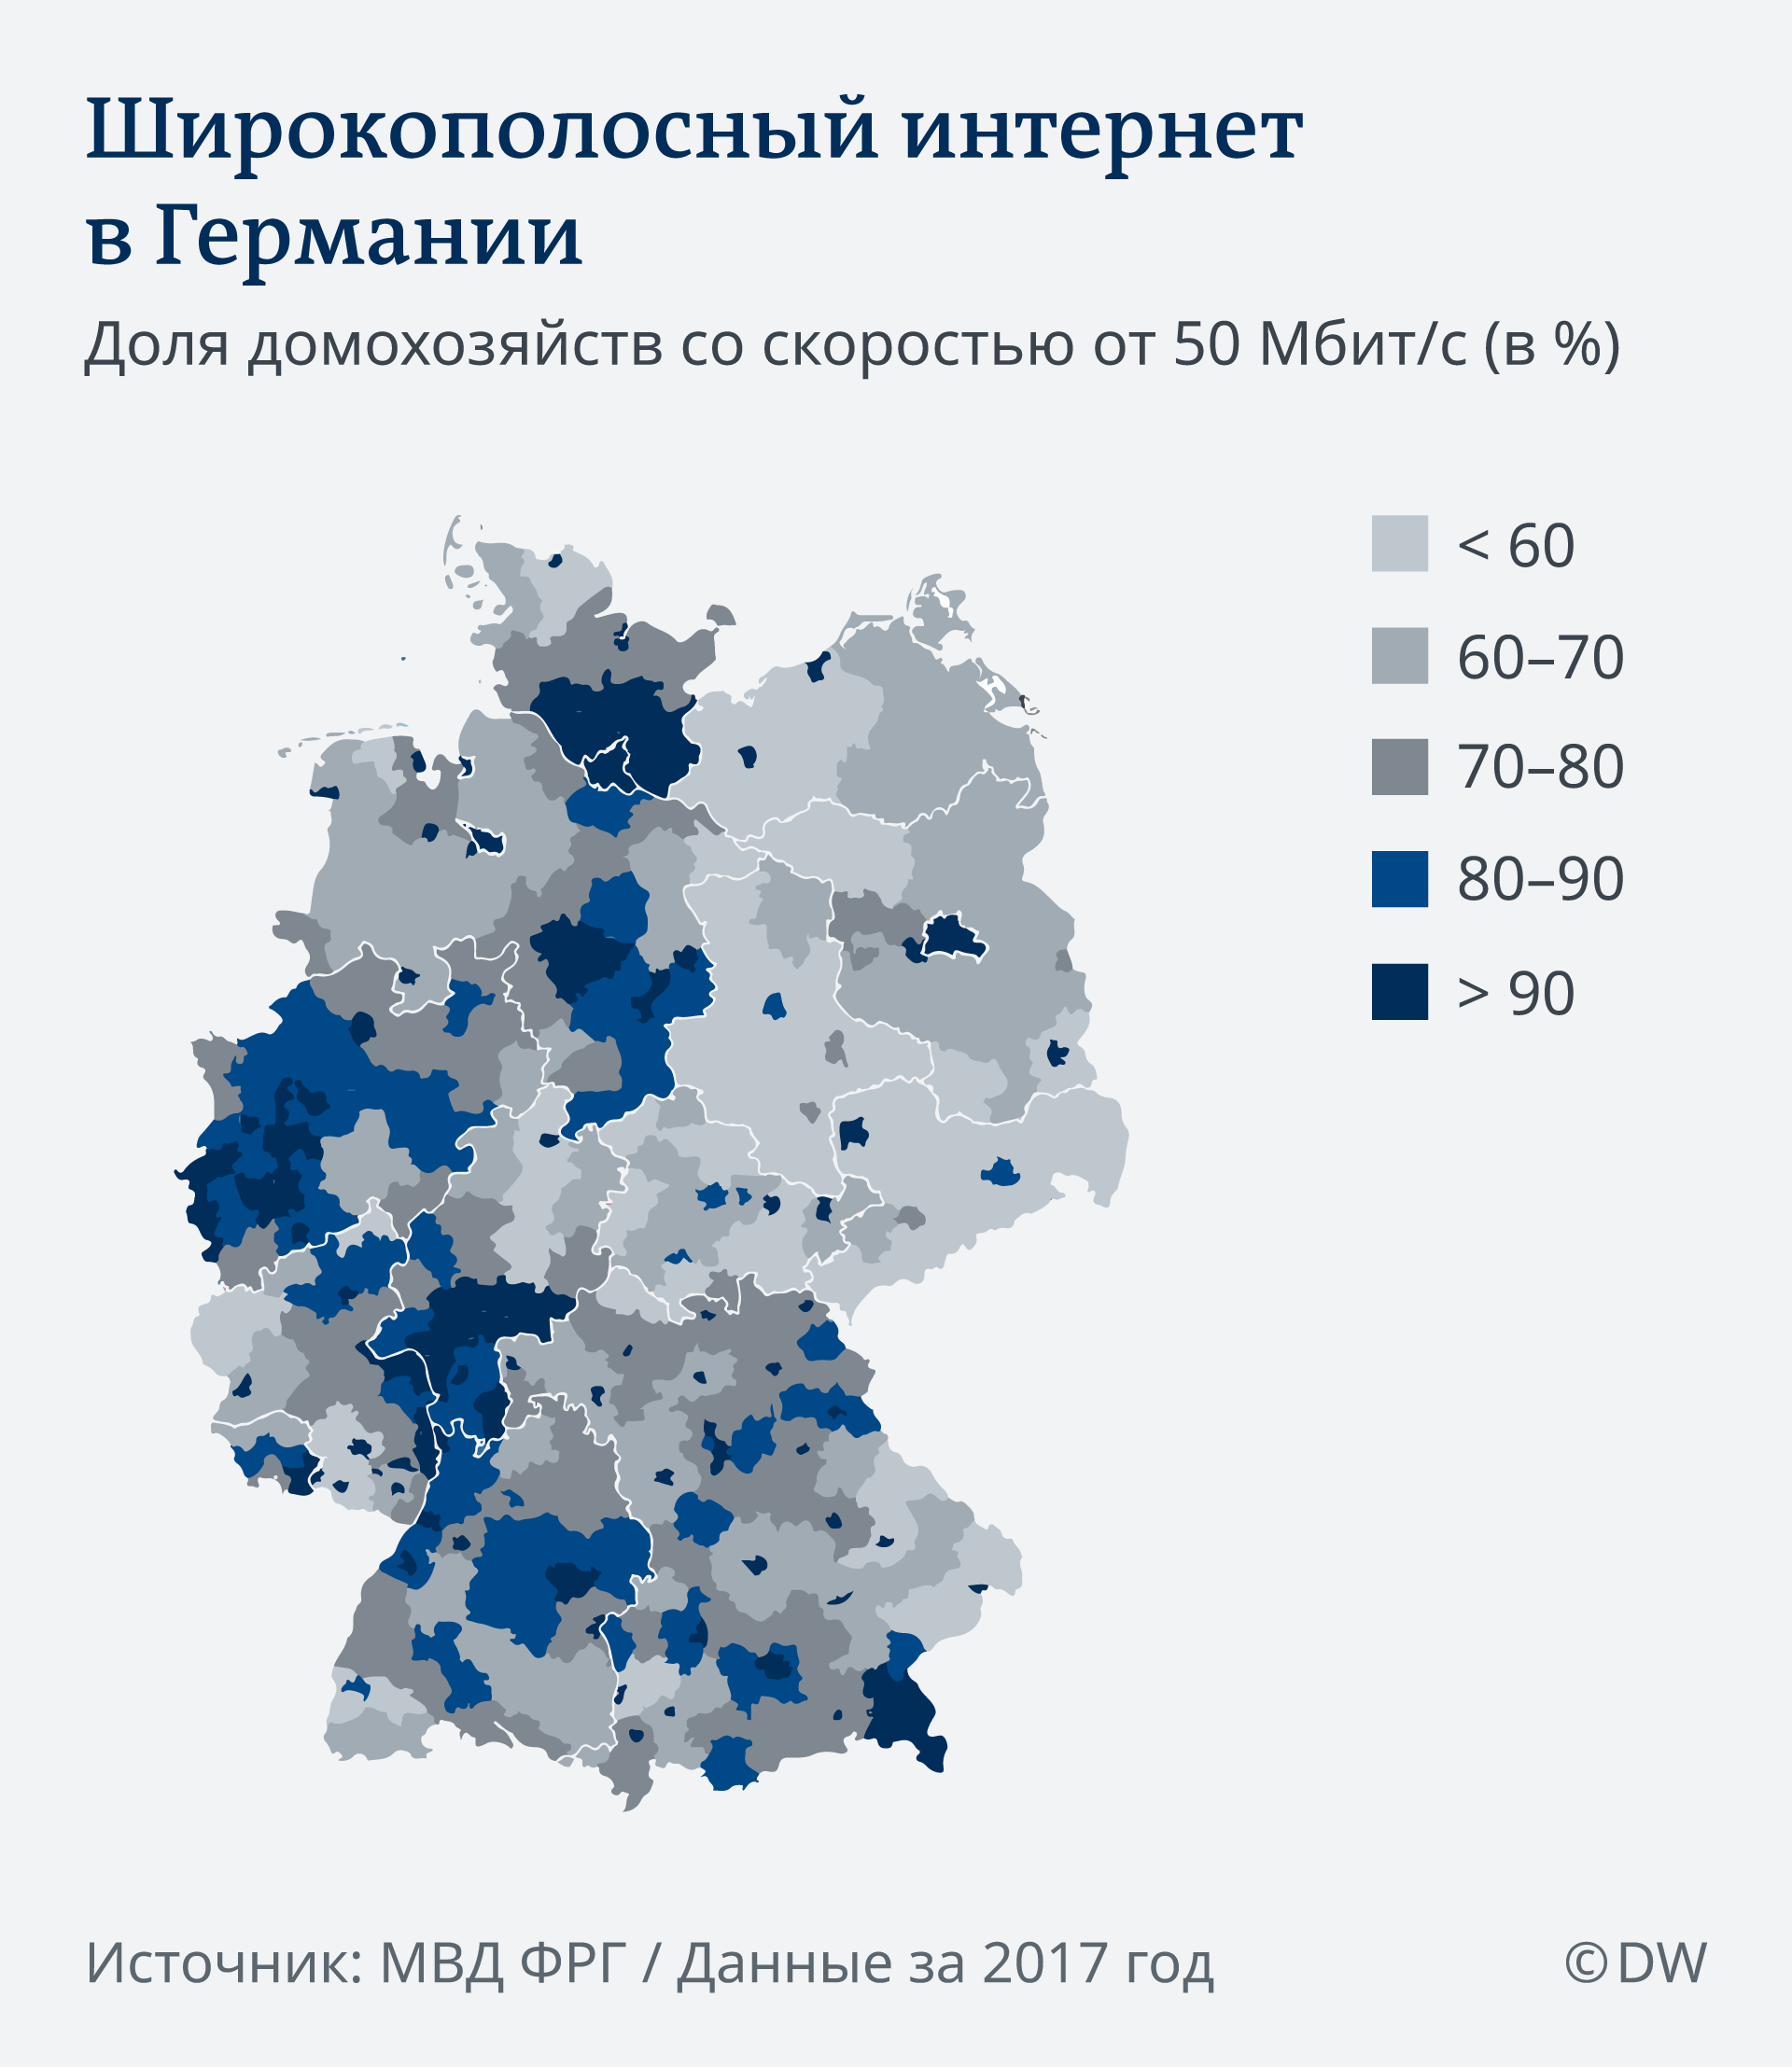 Инфографика Широкополосный интернет в Германии 